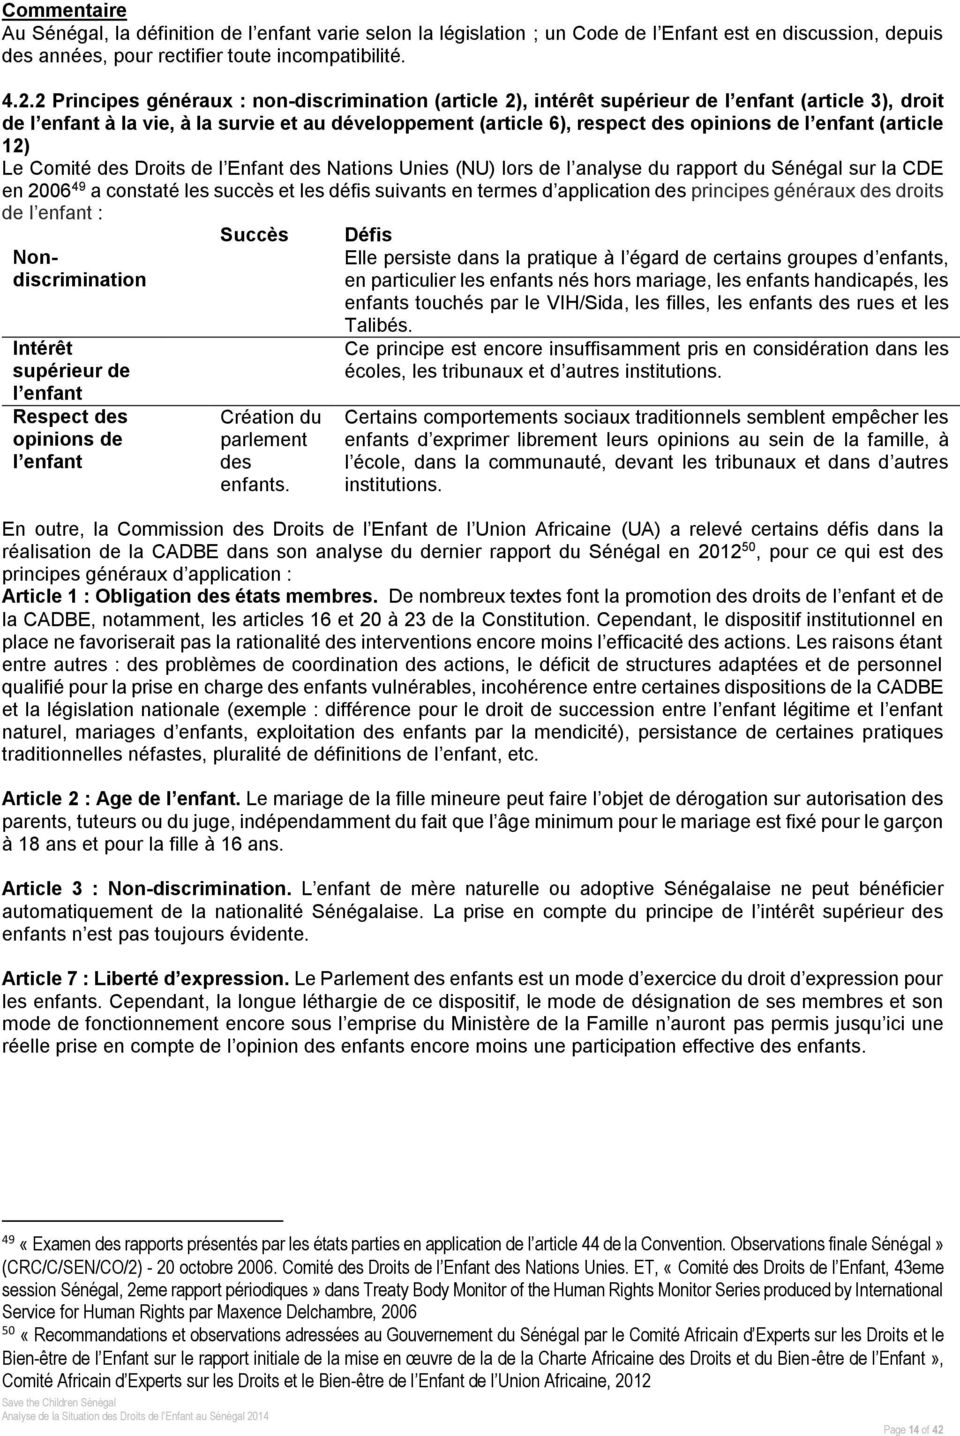 enfant (article 12) Le Comité des Droits de l Enfant des Nations Unies (NU) lors de l analyse du rapport du Sénégal sur la CDE en 2006 49 a constaté les succès et les défis suivants en termes d